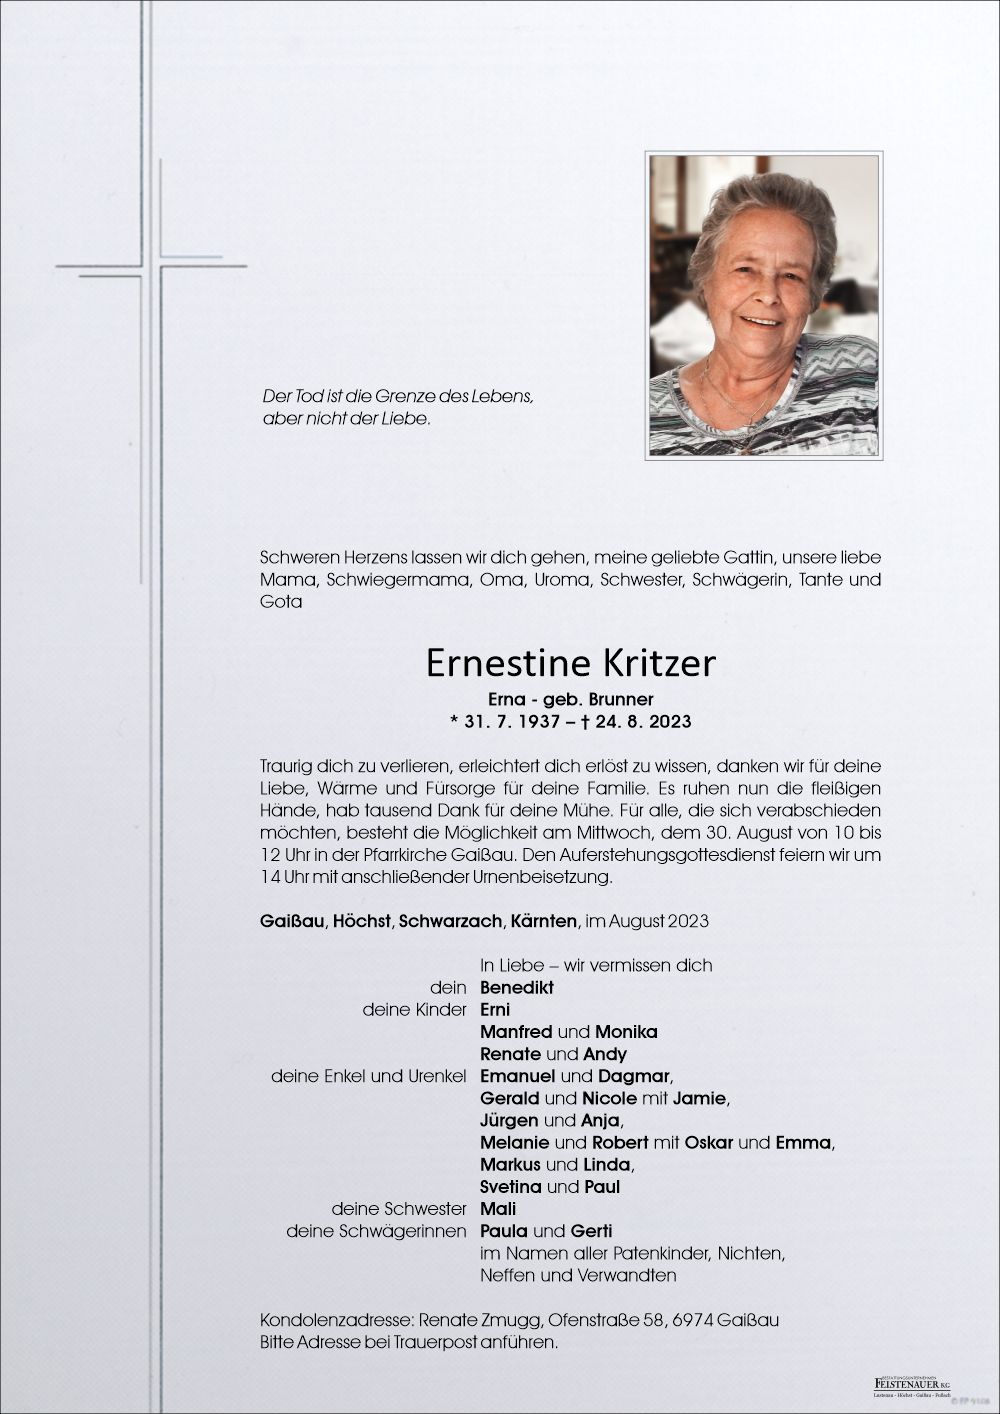 Ernestine Kritzer